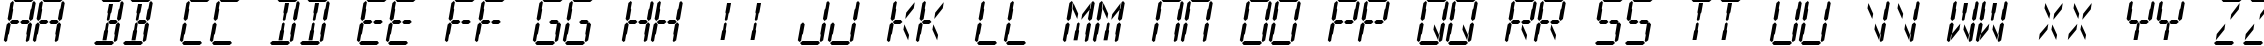 Пример написания английского алфавита шрифтом Digital Readout